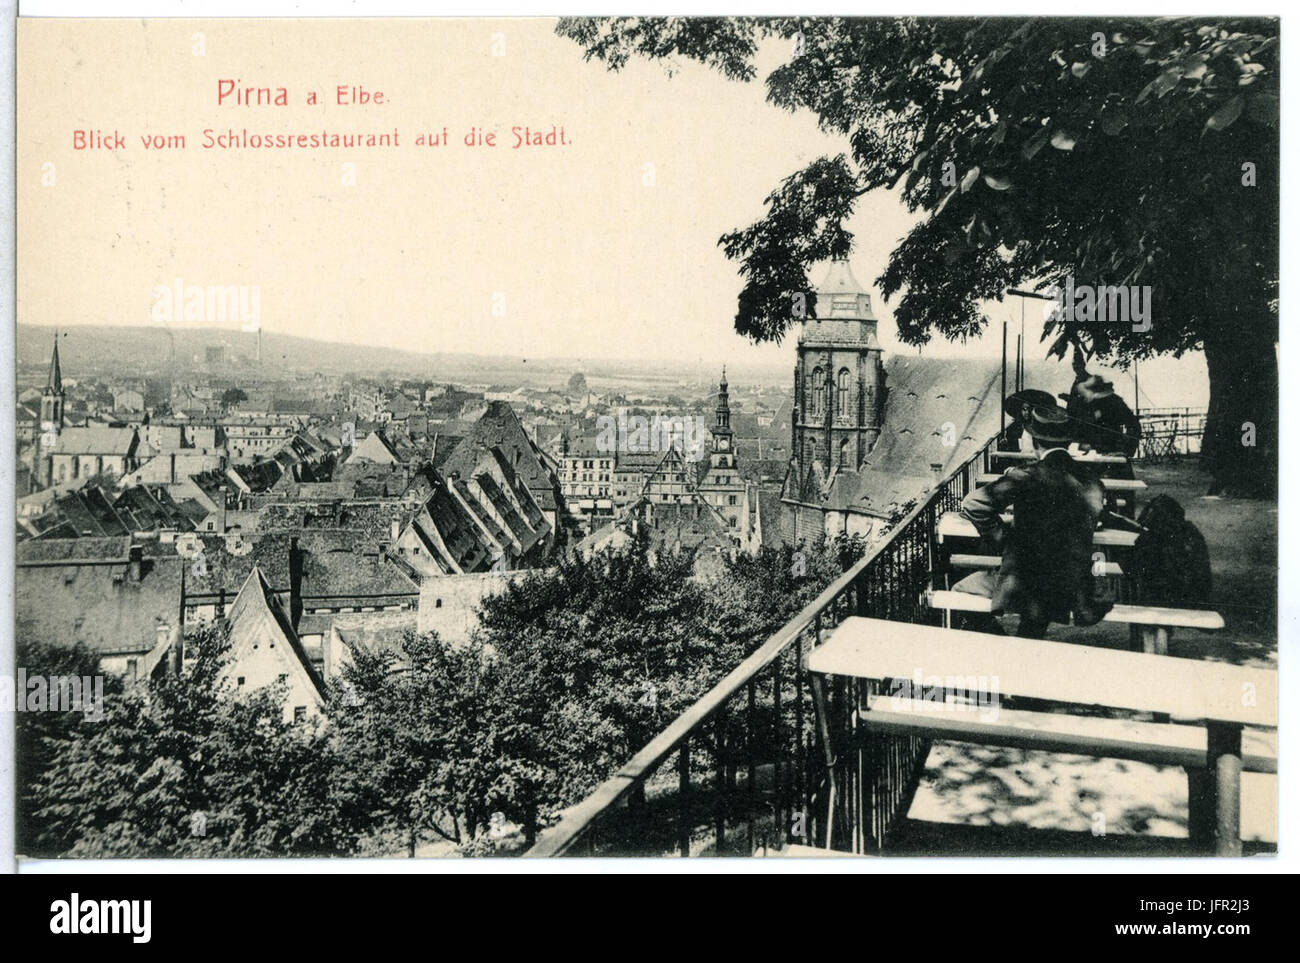 12877-Pirna-1911-Blick vom Schloßrestaurant auf die Stadt-Brück & Sohn Kunstverlag Stock Photo